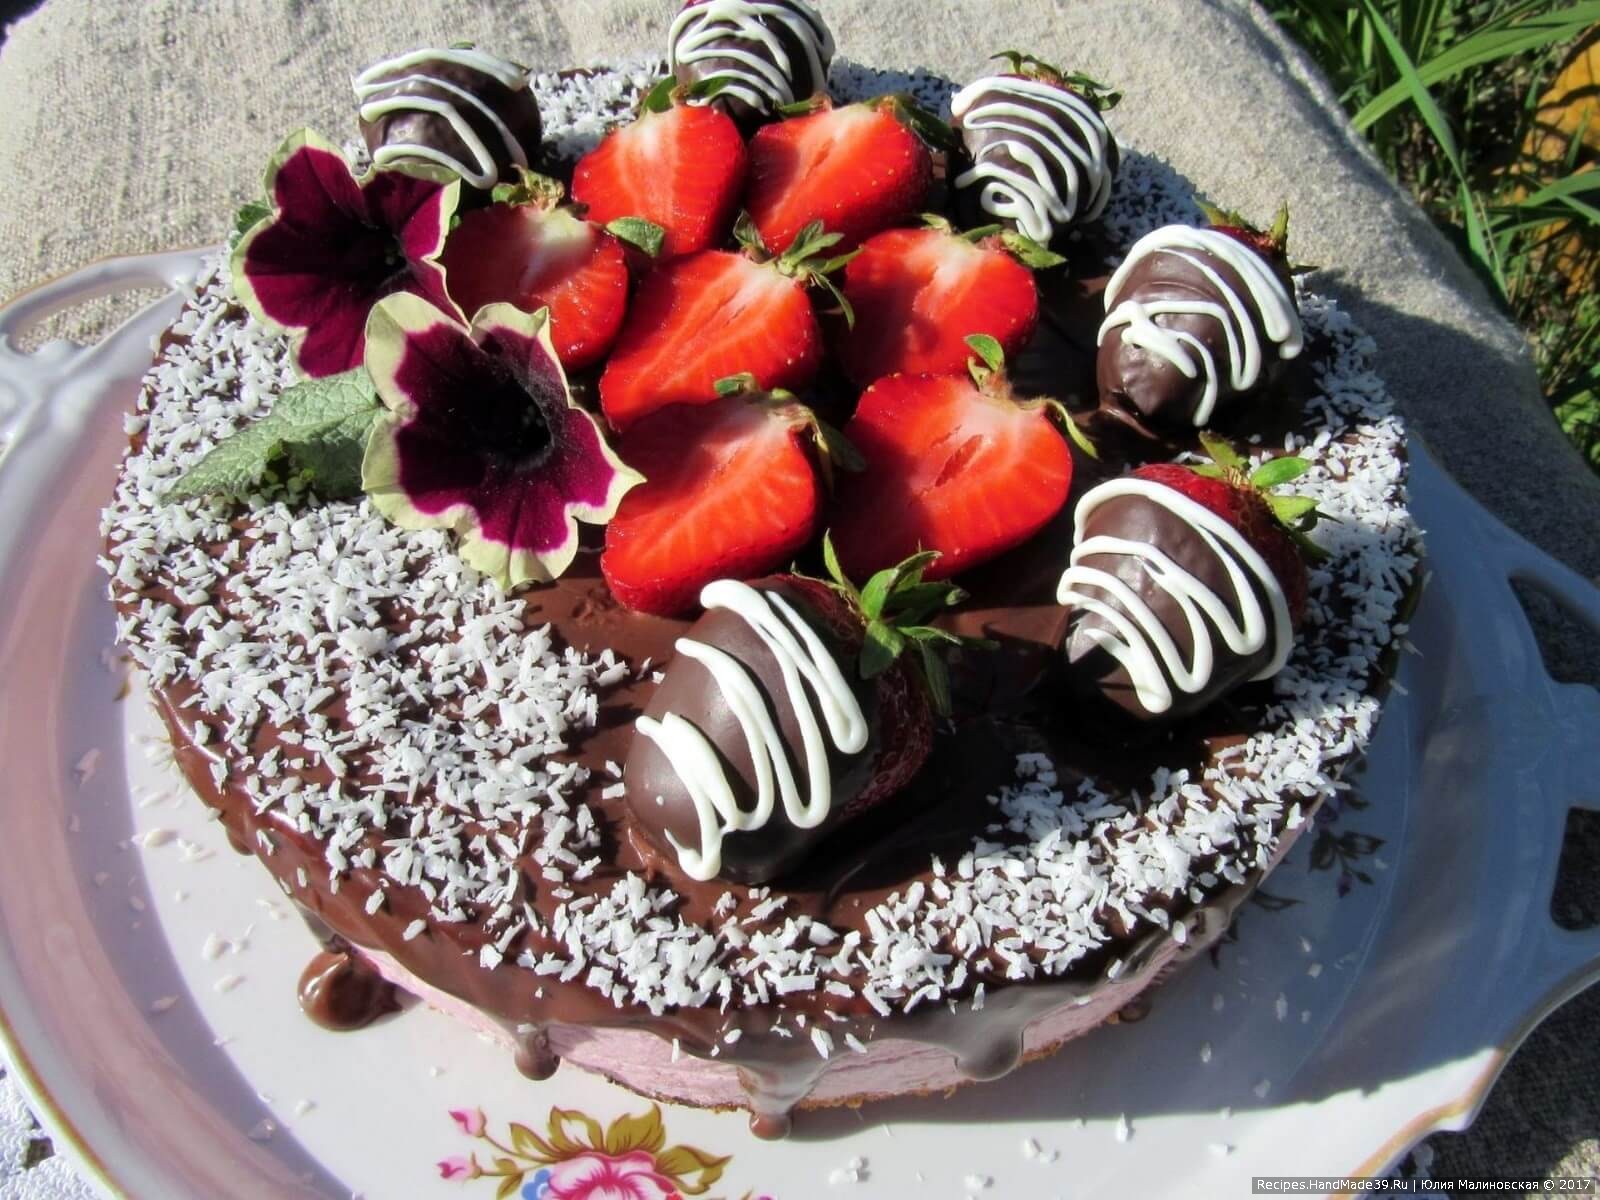 Торт «Клубника в шоколаде» - рецепт от Гранд кулинара